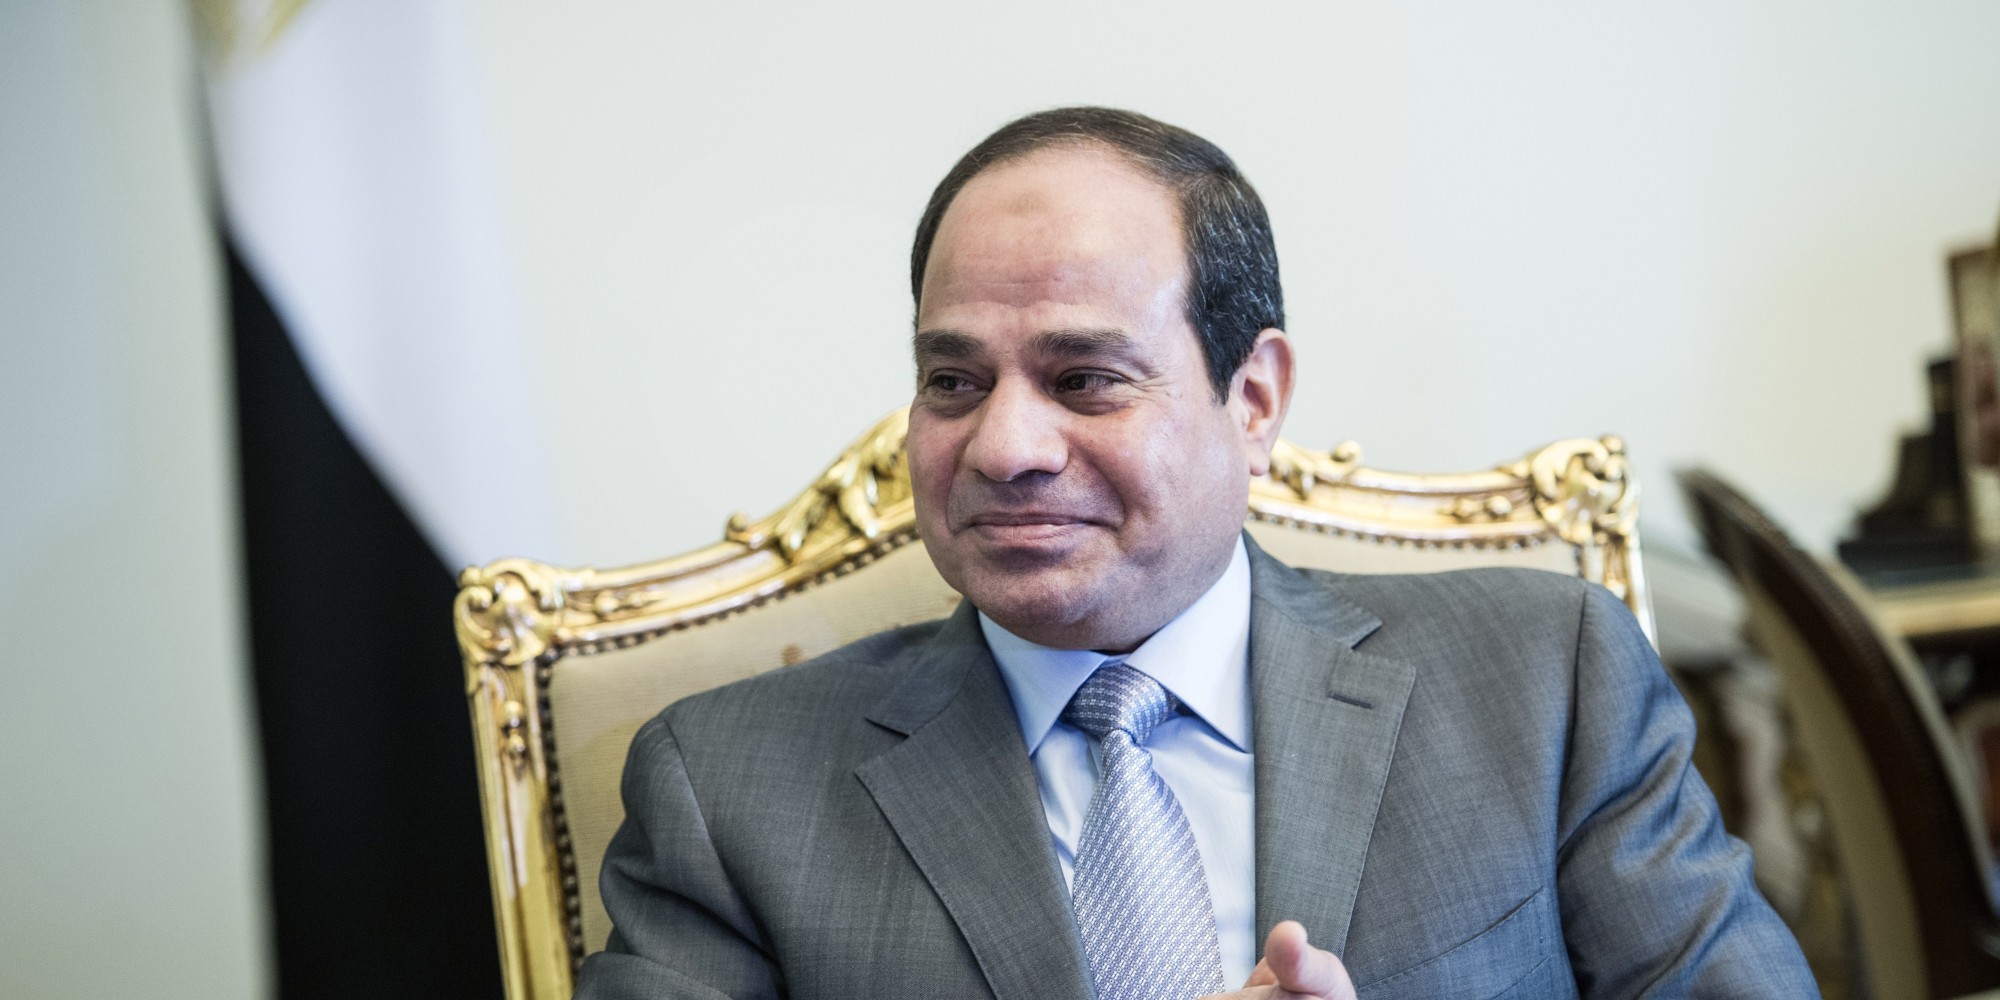   القوات المسلحة تهنئ الرئيس والشعب المصري بمناسبة الاحتفال بذكرى 30يونيو